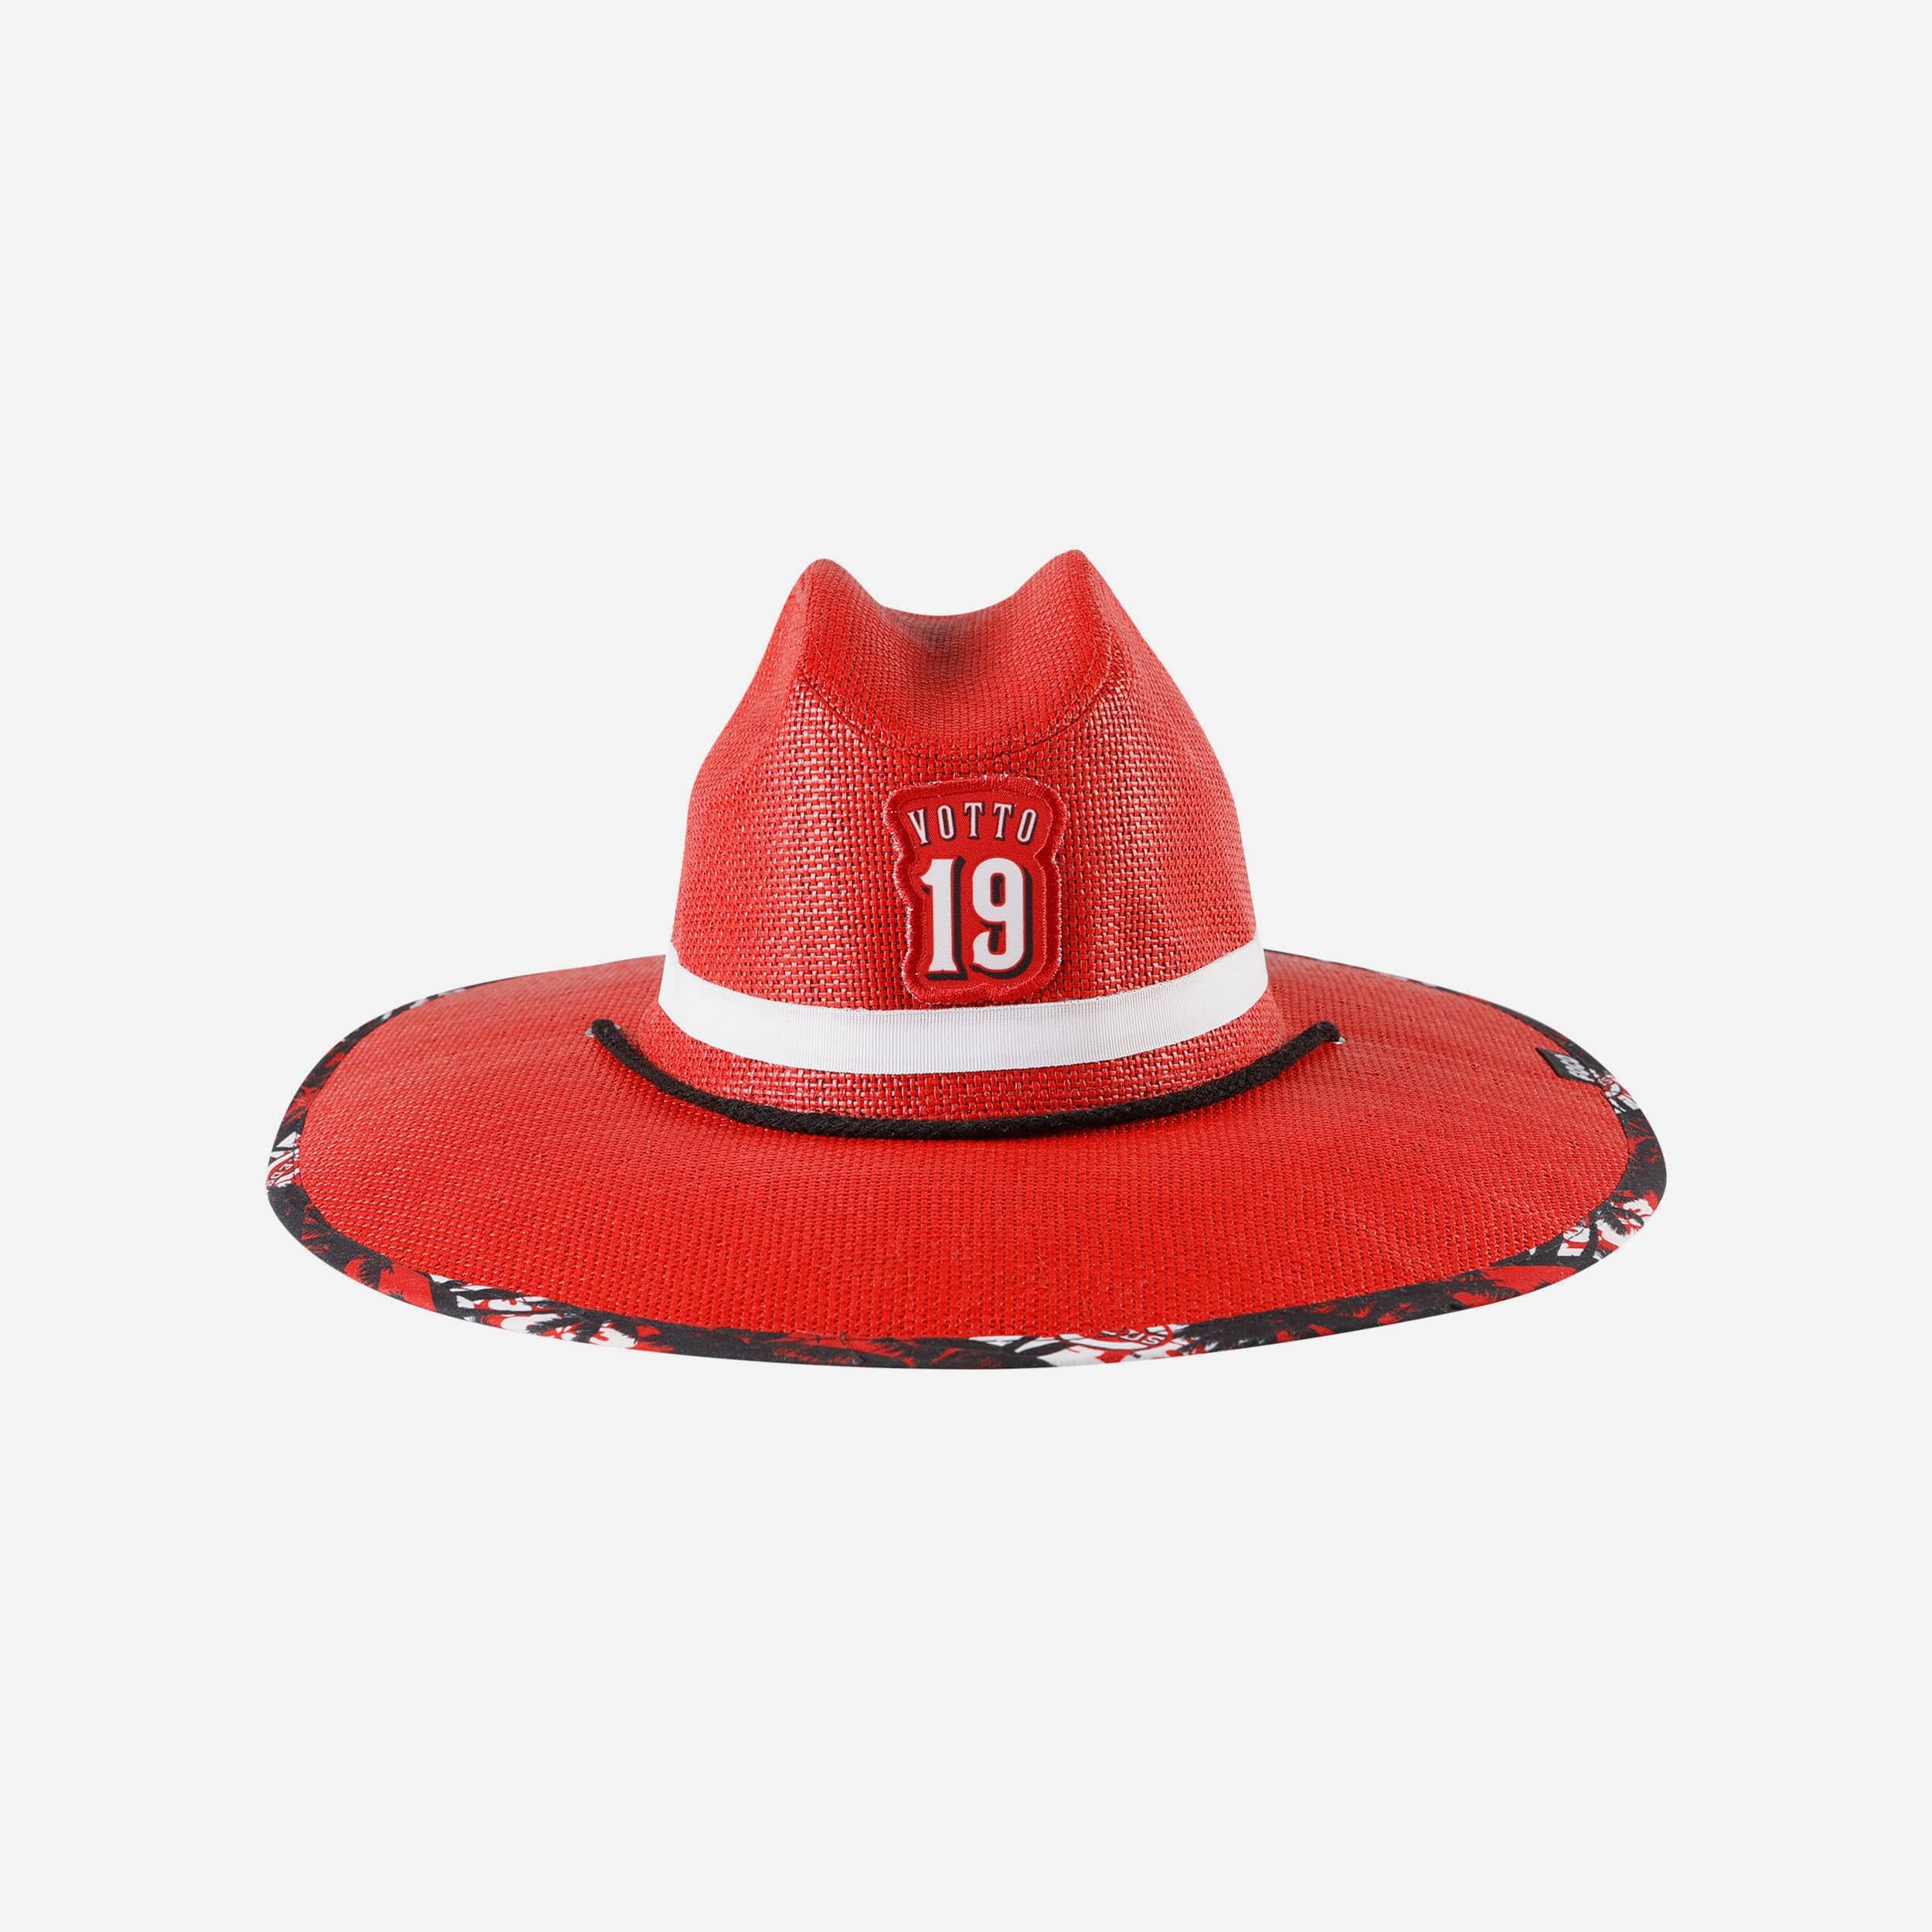 FOCO Joey Votto Cincinnati Reds Straw Hat - Unisex